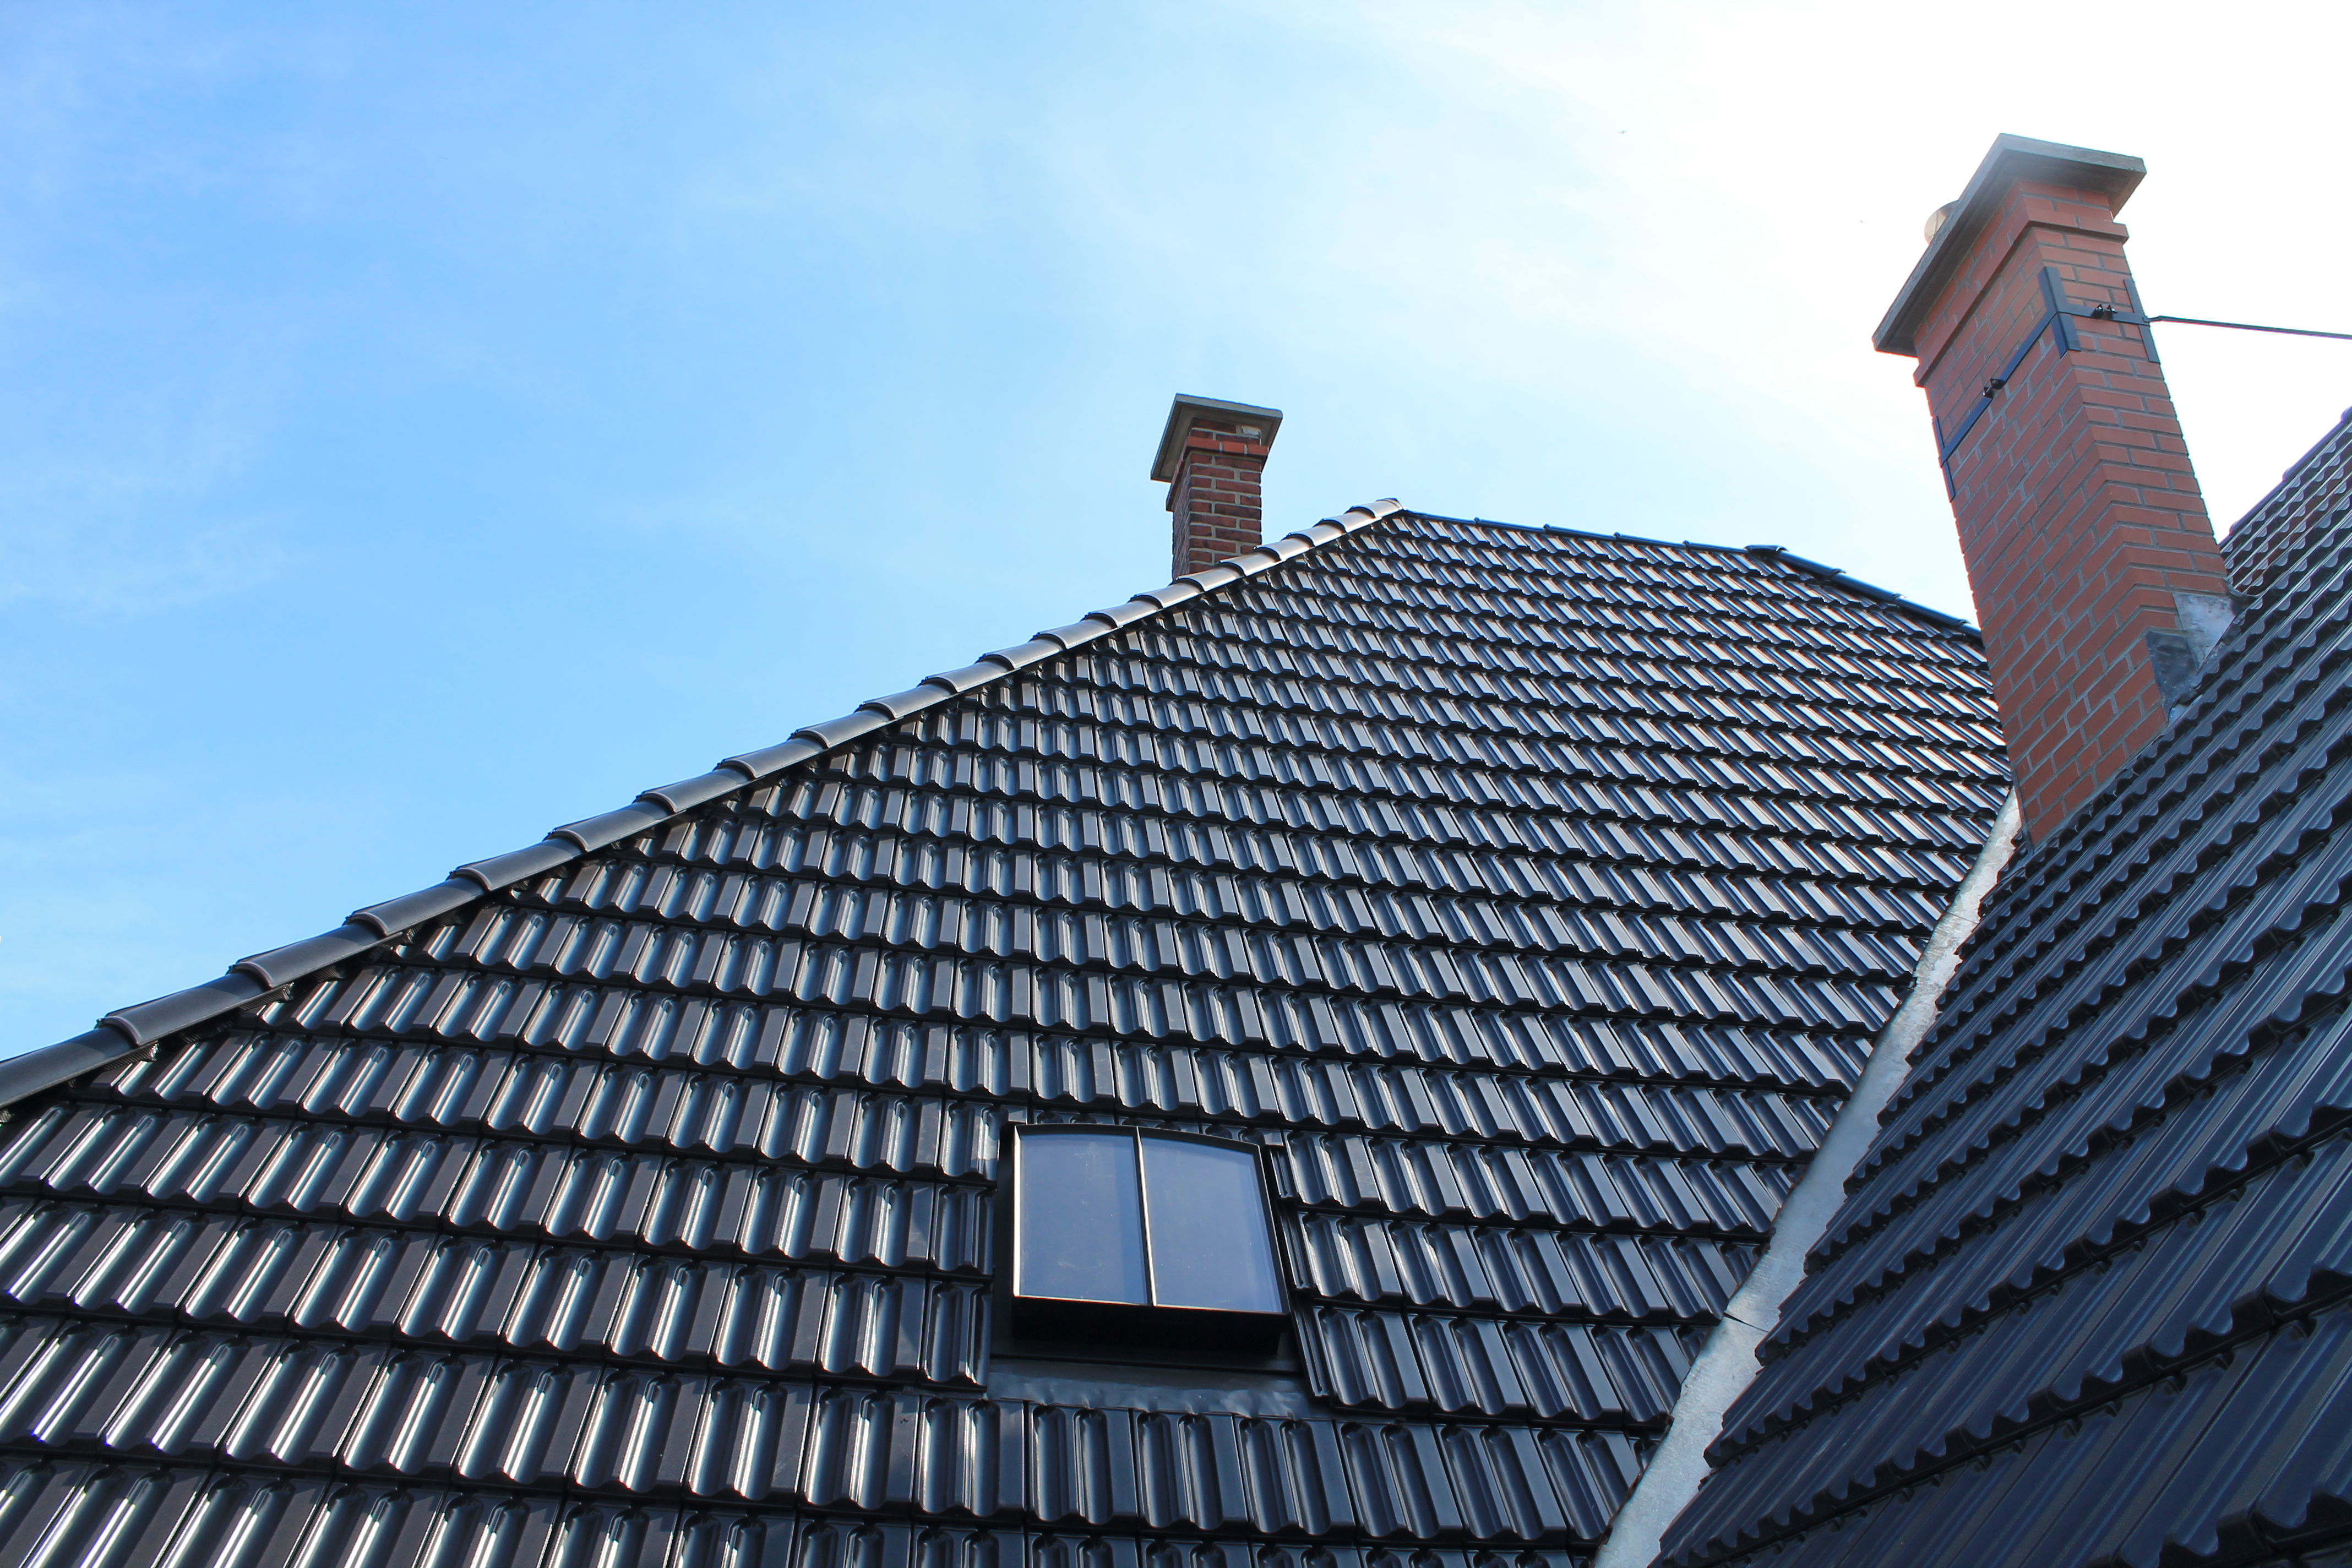 510.0001.70 Dachfenster DRK 40 x 60 cm (Fensterteil) Oben Rundbogen Vertikale Einteilung Eisen pulverbeschichtet